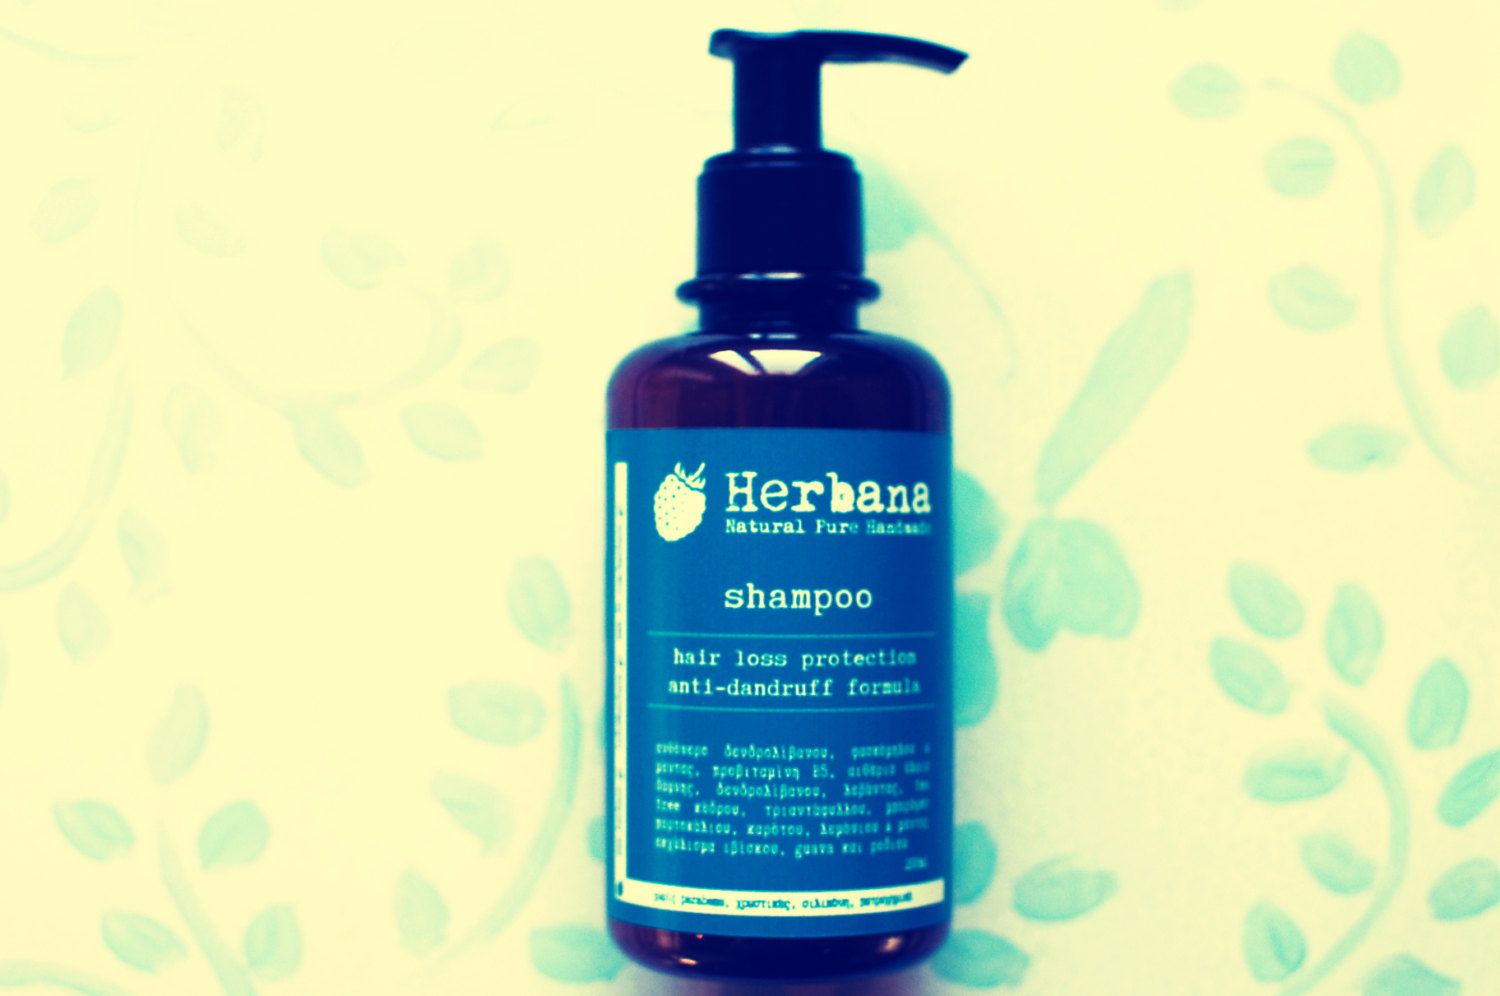 Hair loss Natural Shampoo Anti